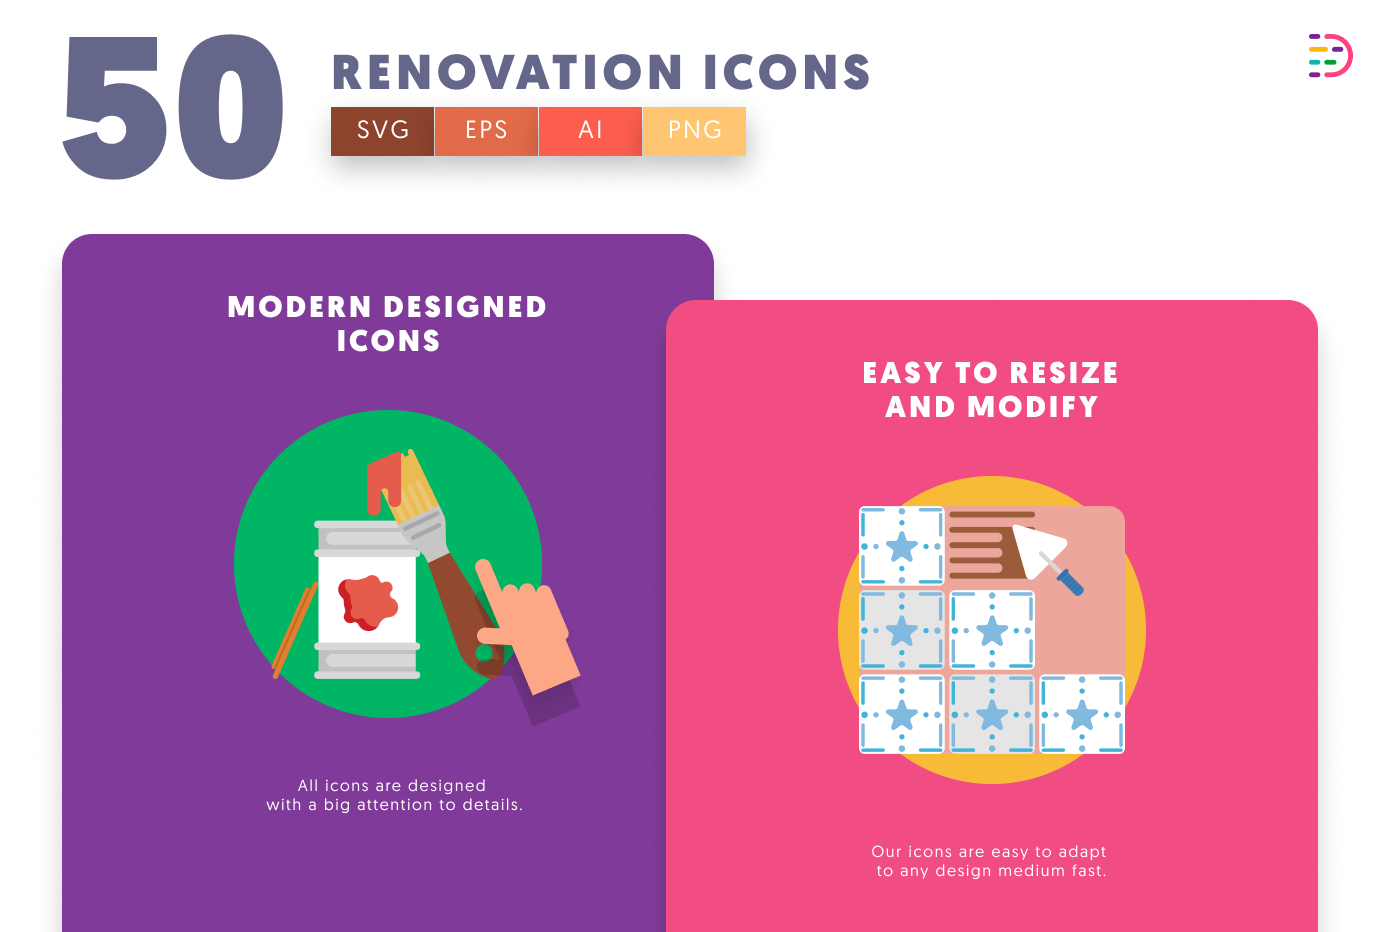 50-Renovation-Icons